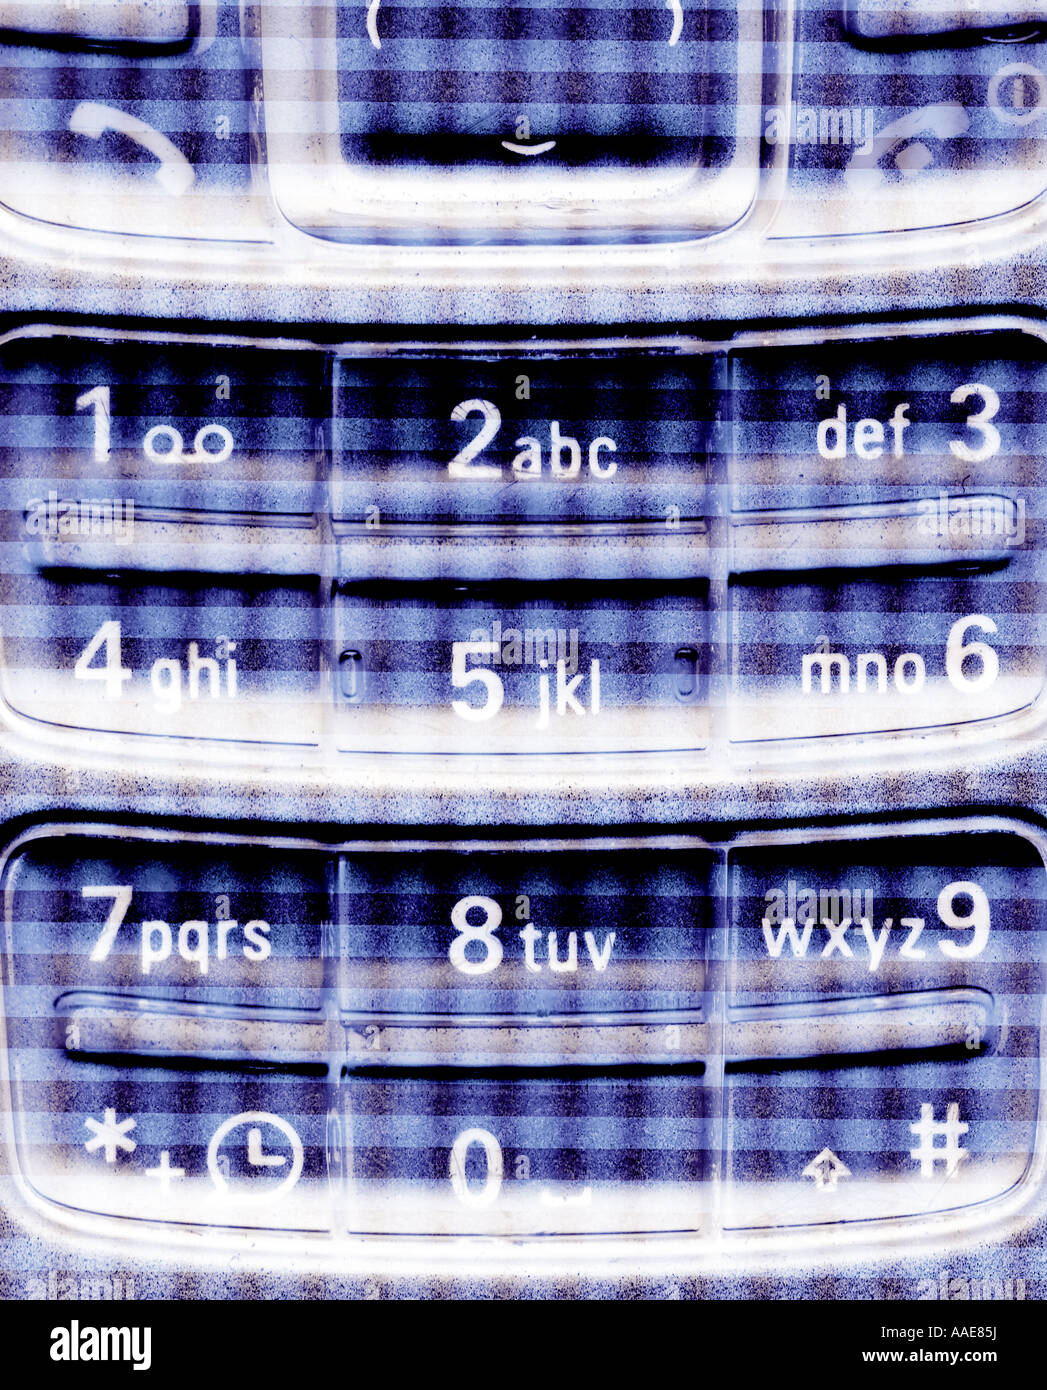 Numéros de clavier du téléphone mobile Banque D'Images